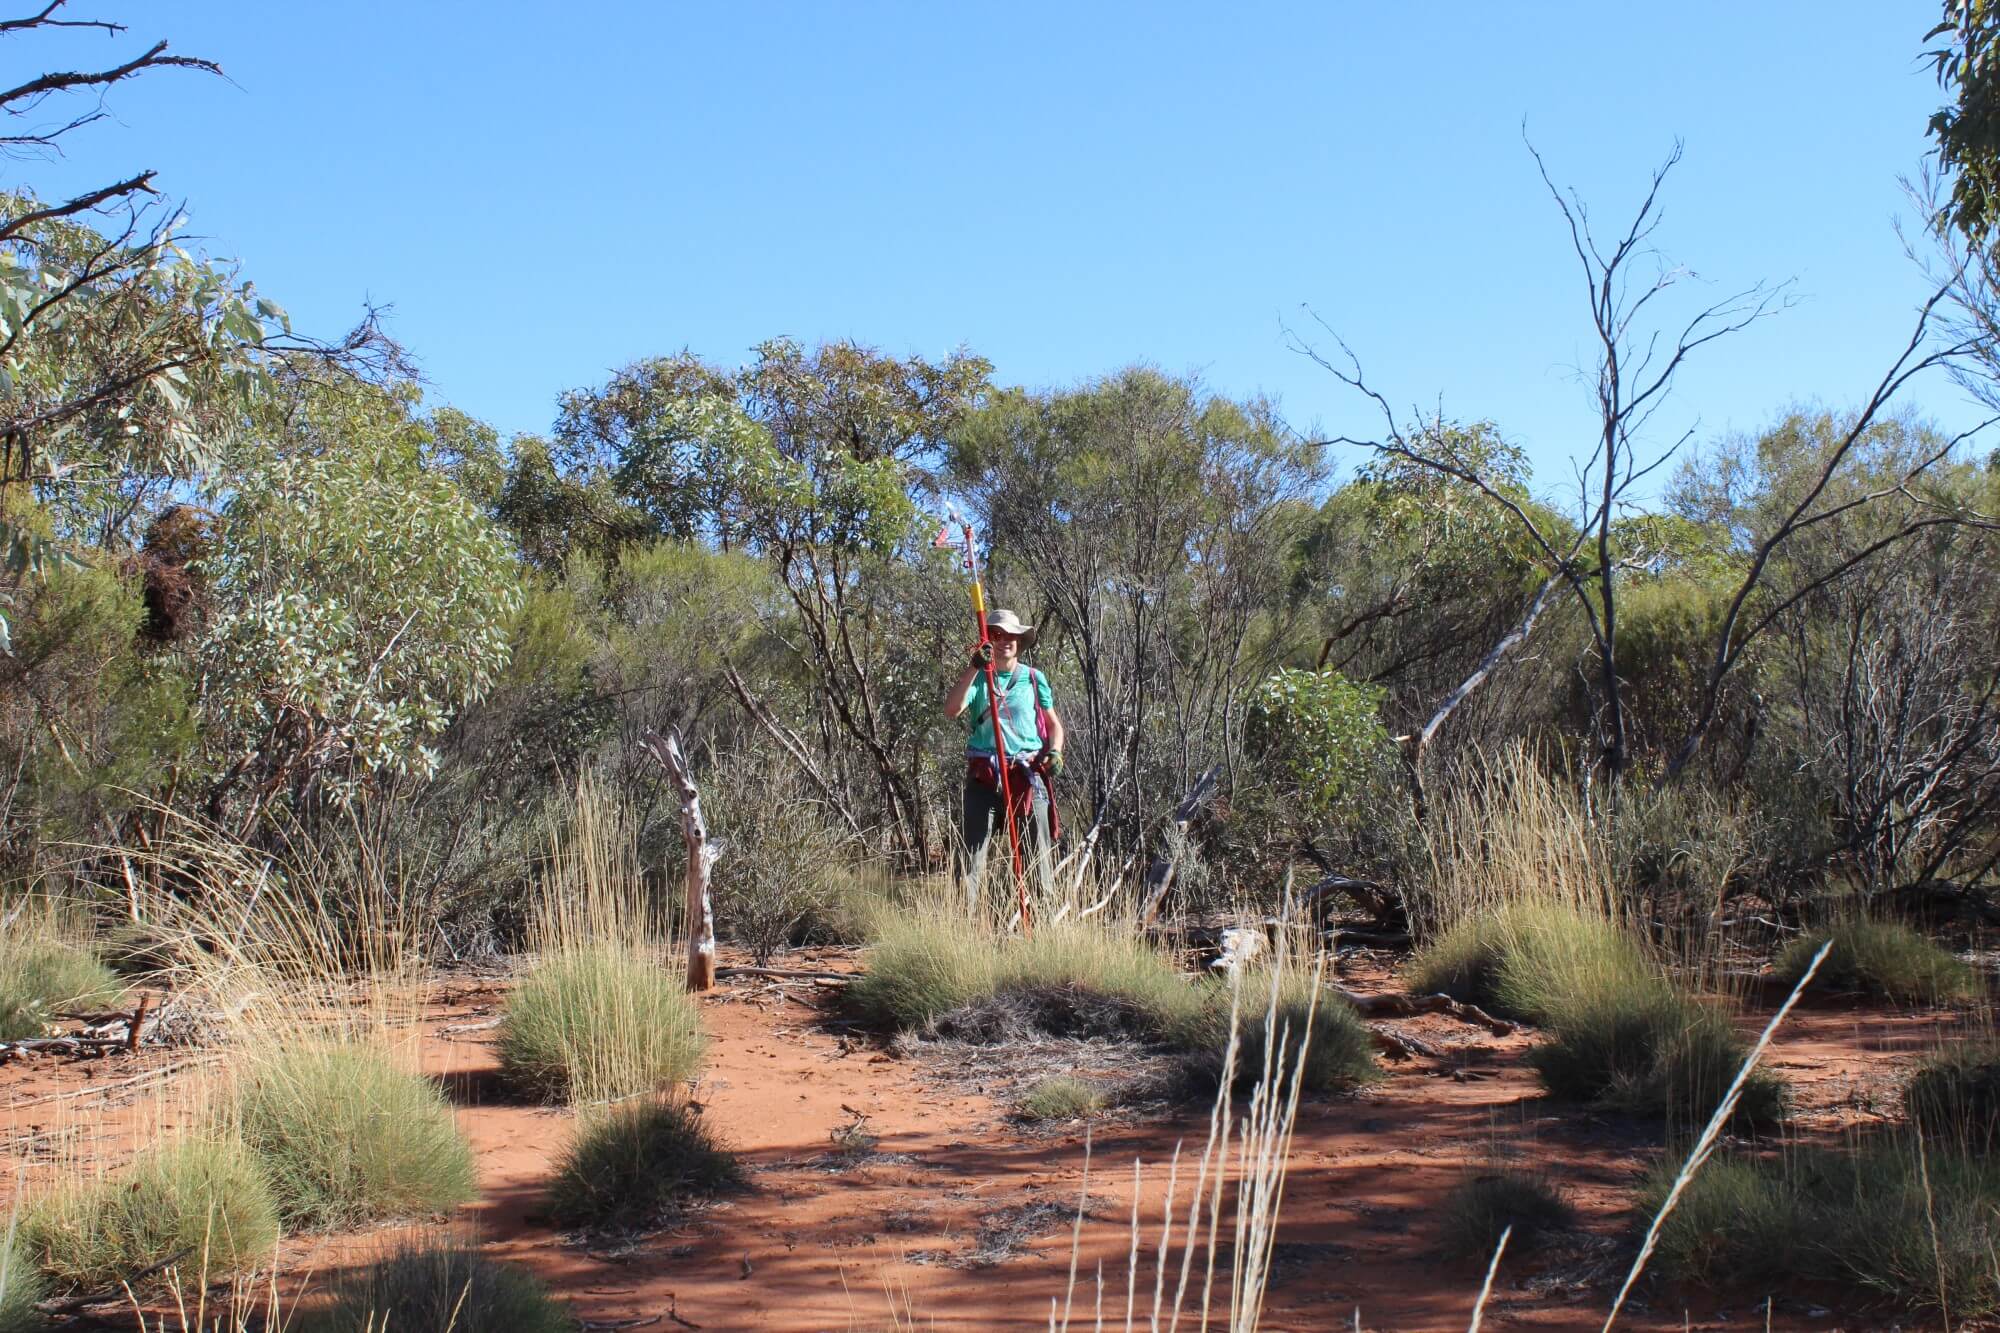 Le professeur Vincent Maire est photographié ici lors de travaux en Australie, dans un écosystème aride.